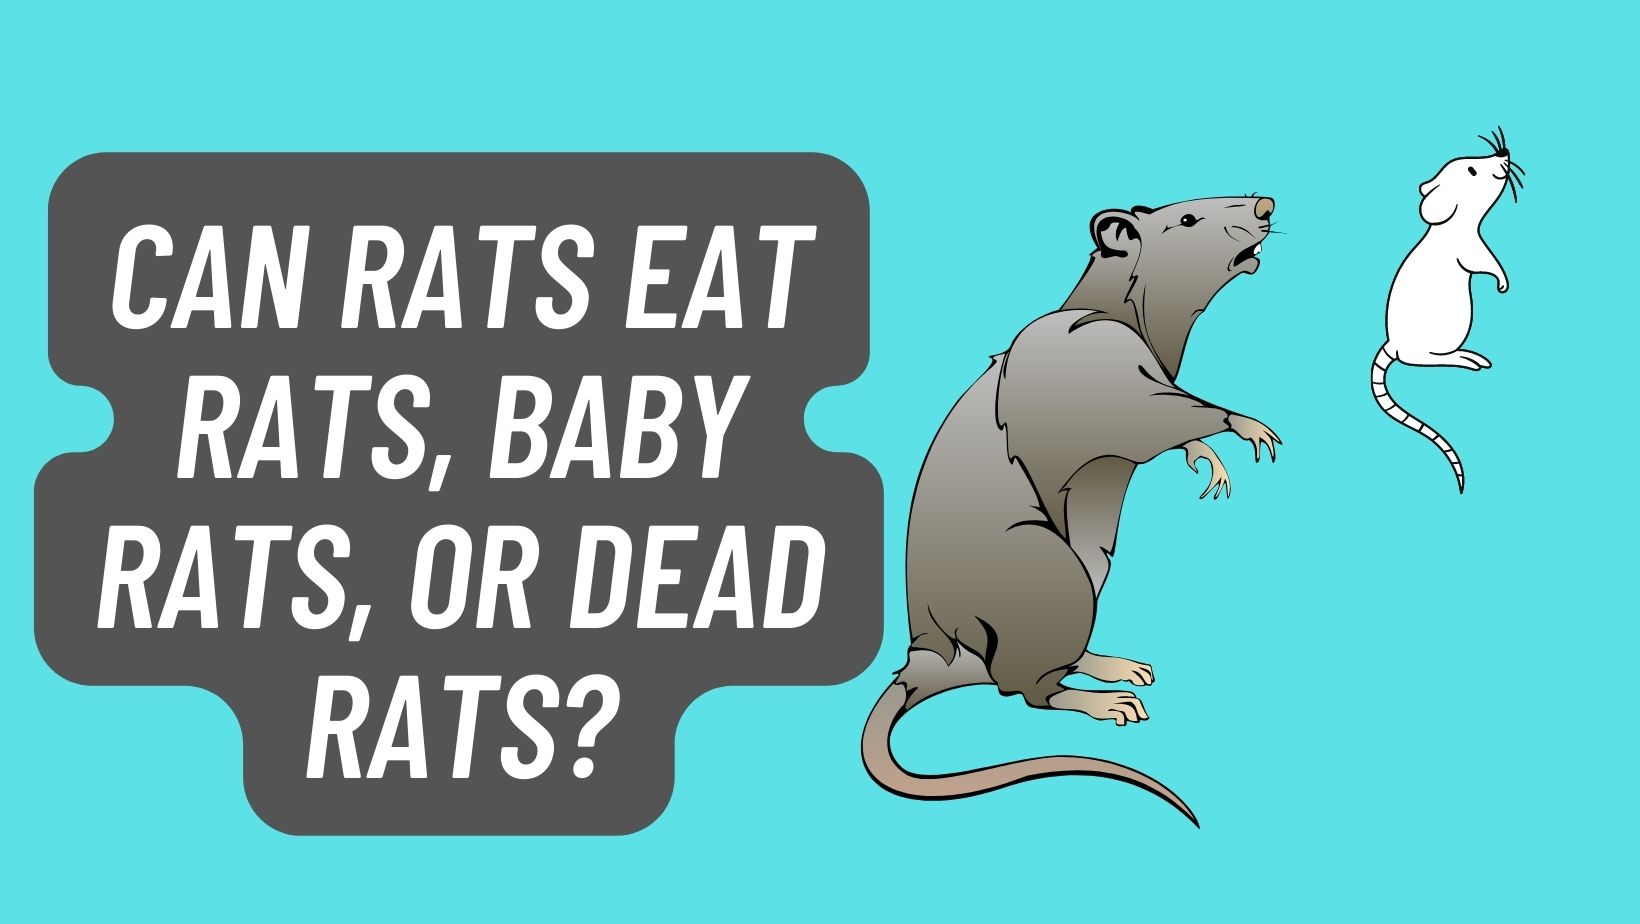 Can Rats eat Rats, Baby Rats, or Dead Rats?